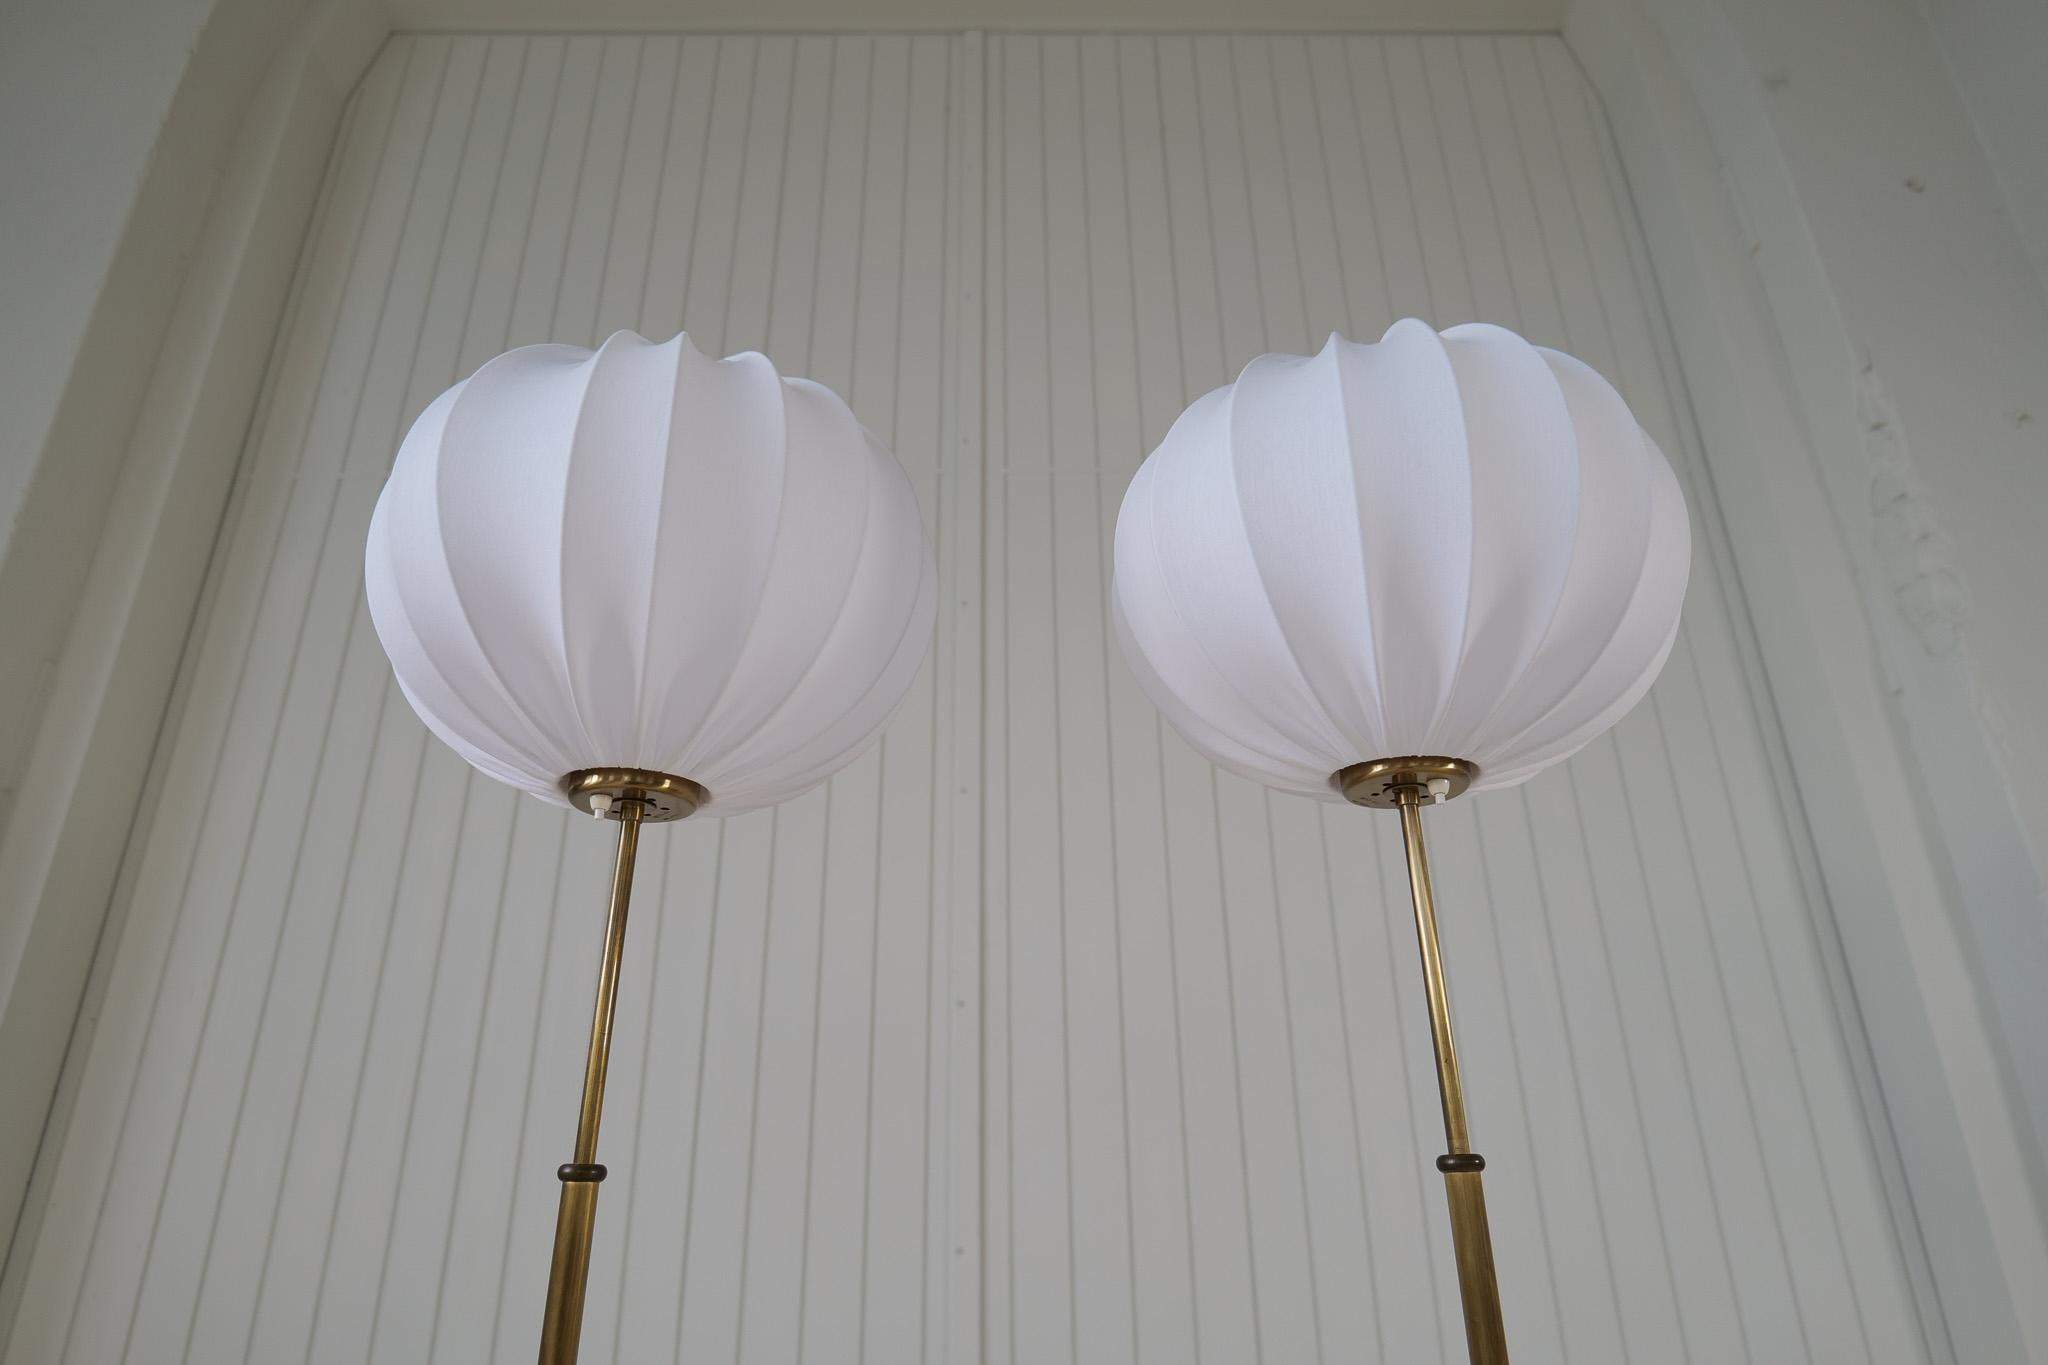 Midcentury Modern Josef Frank Floor Lamps Model G2326 by Svenskt Tenn Sweden For Sale 1